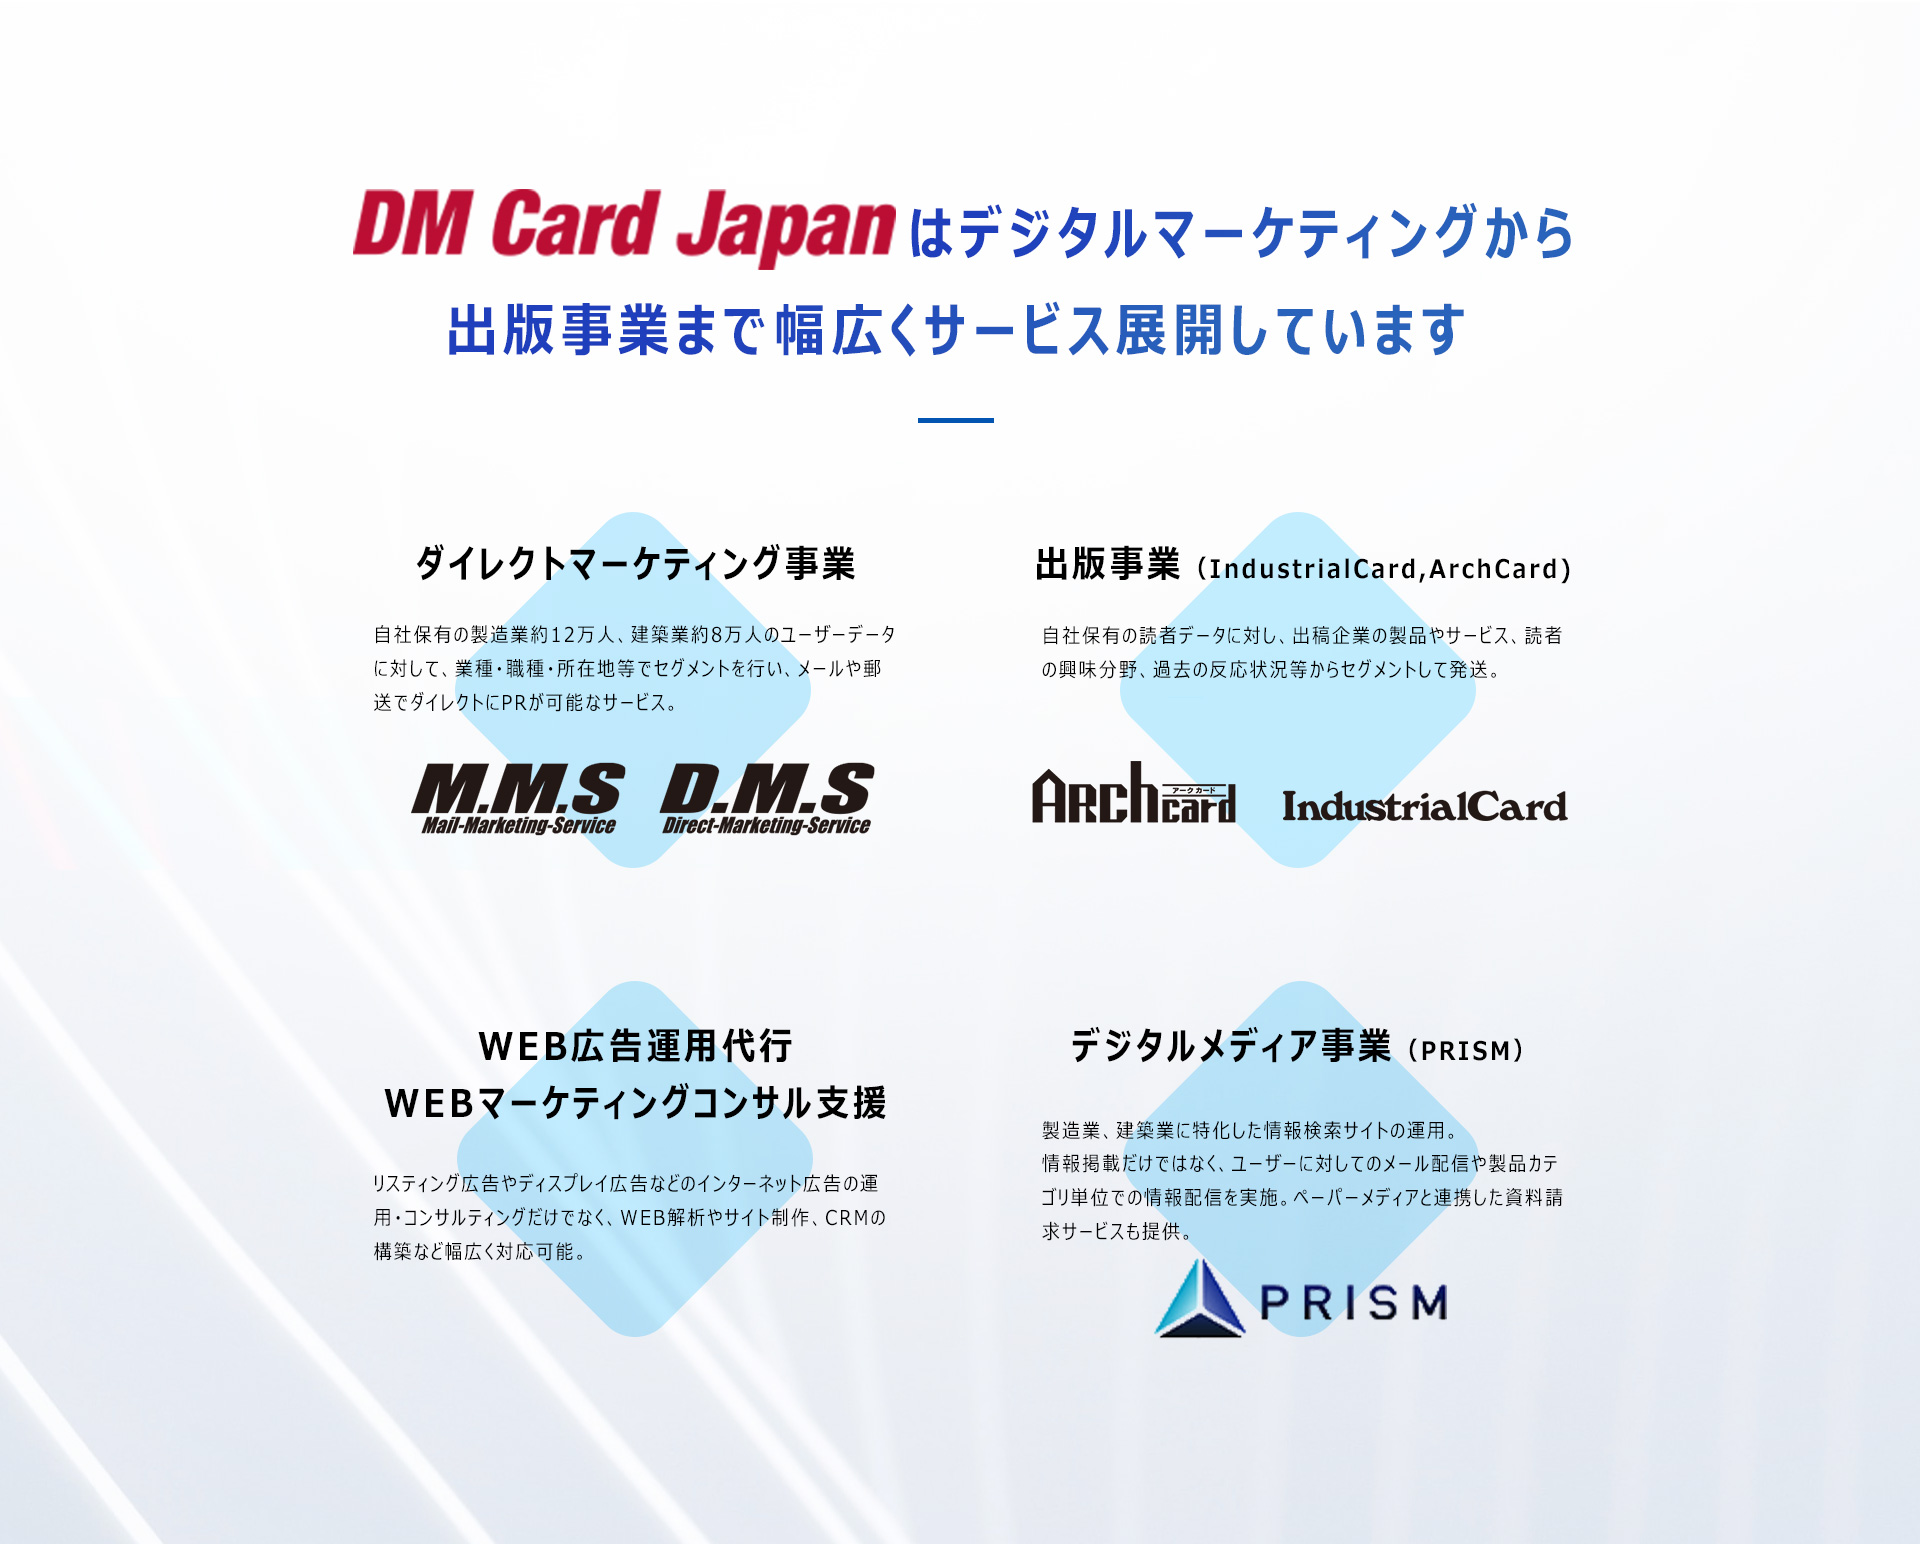 DMカードジャパンはデジタルマーケティングから出版事業まで幅広くサービス展開しています